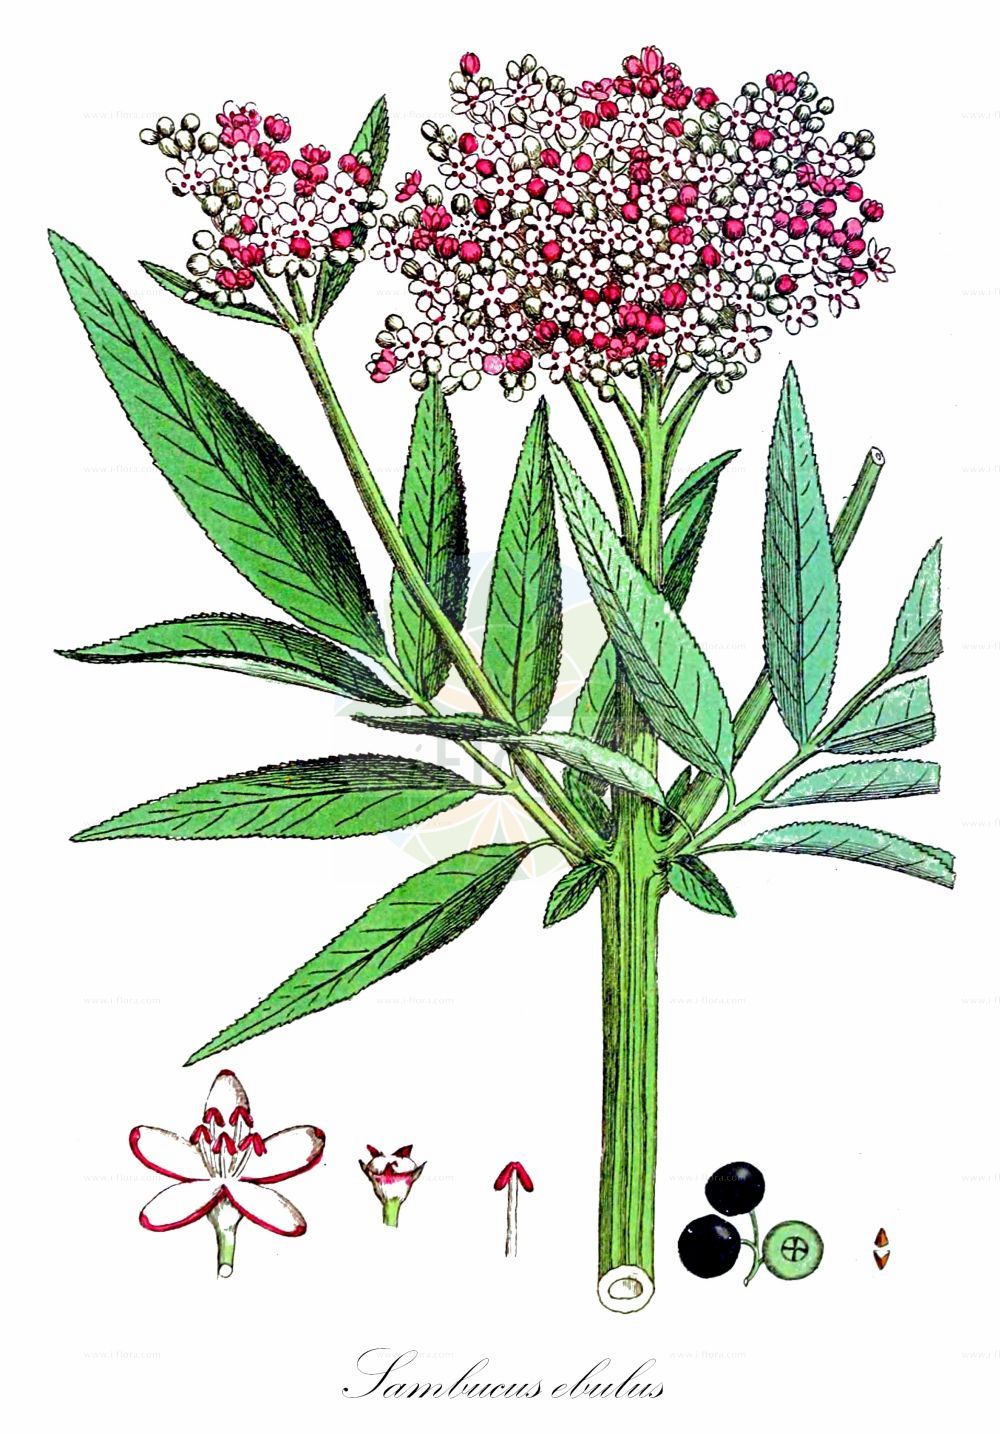 Historische Abbildung von Sambucus ebulus (Zwerg-Holunder - Dwarf Elder). Das Bild zeigt Blatt, Bluete, Frucht und Same. ---- Historical Drawing of Sambucus ebulus (Zwerg-Holunder - Dwarf Elder). The image is showing leaf, flower, fruit and seed.(Sambucus ebulus,Zwerg-Holunder,Dwarf Elder,Sambucus deborensis,Sambucus ebulus,Sambucus ebulus var. deborensis,Zwerg-Holunder,Attich,Dwarf Elder,Danewort,Dwarf Elderberry,Sambucus,Holunder,Elderberry,Adoxaceae,Moschuskrautgewächse,Adoxa family,Blatt,Bluete,Frucht,Same,leaf,flower,fruit,seed,Svensk Botanik (Svensk Botanik))